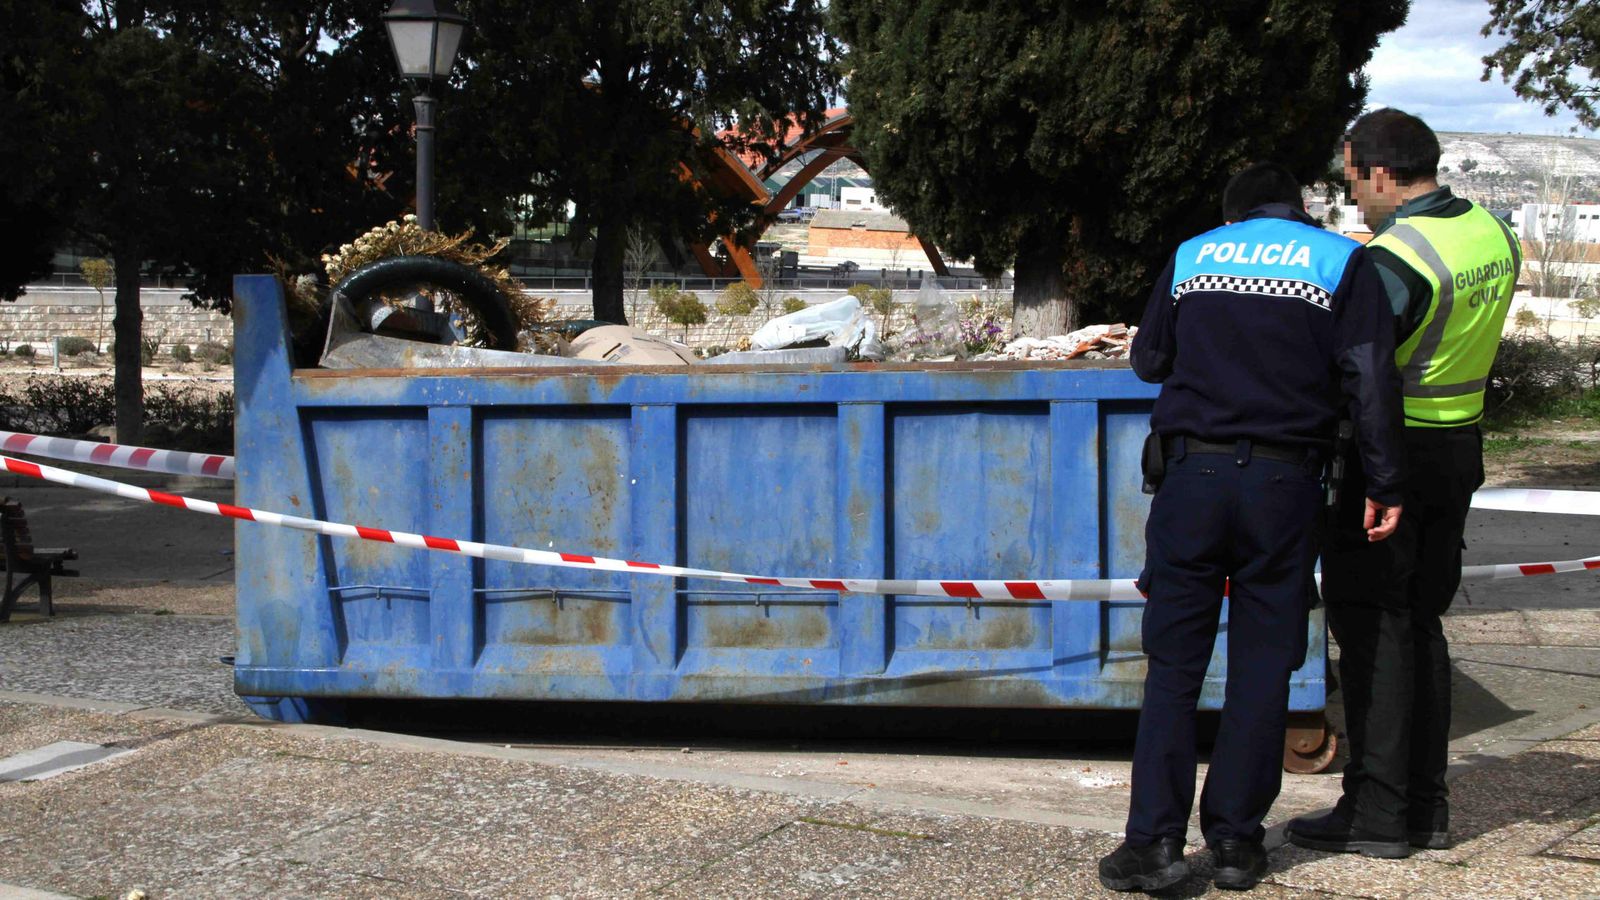 Foto: El contenedor donde fue hallado el cadaver. (A.Ojosnegros. El Norte de Castilla)